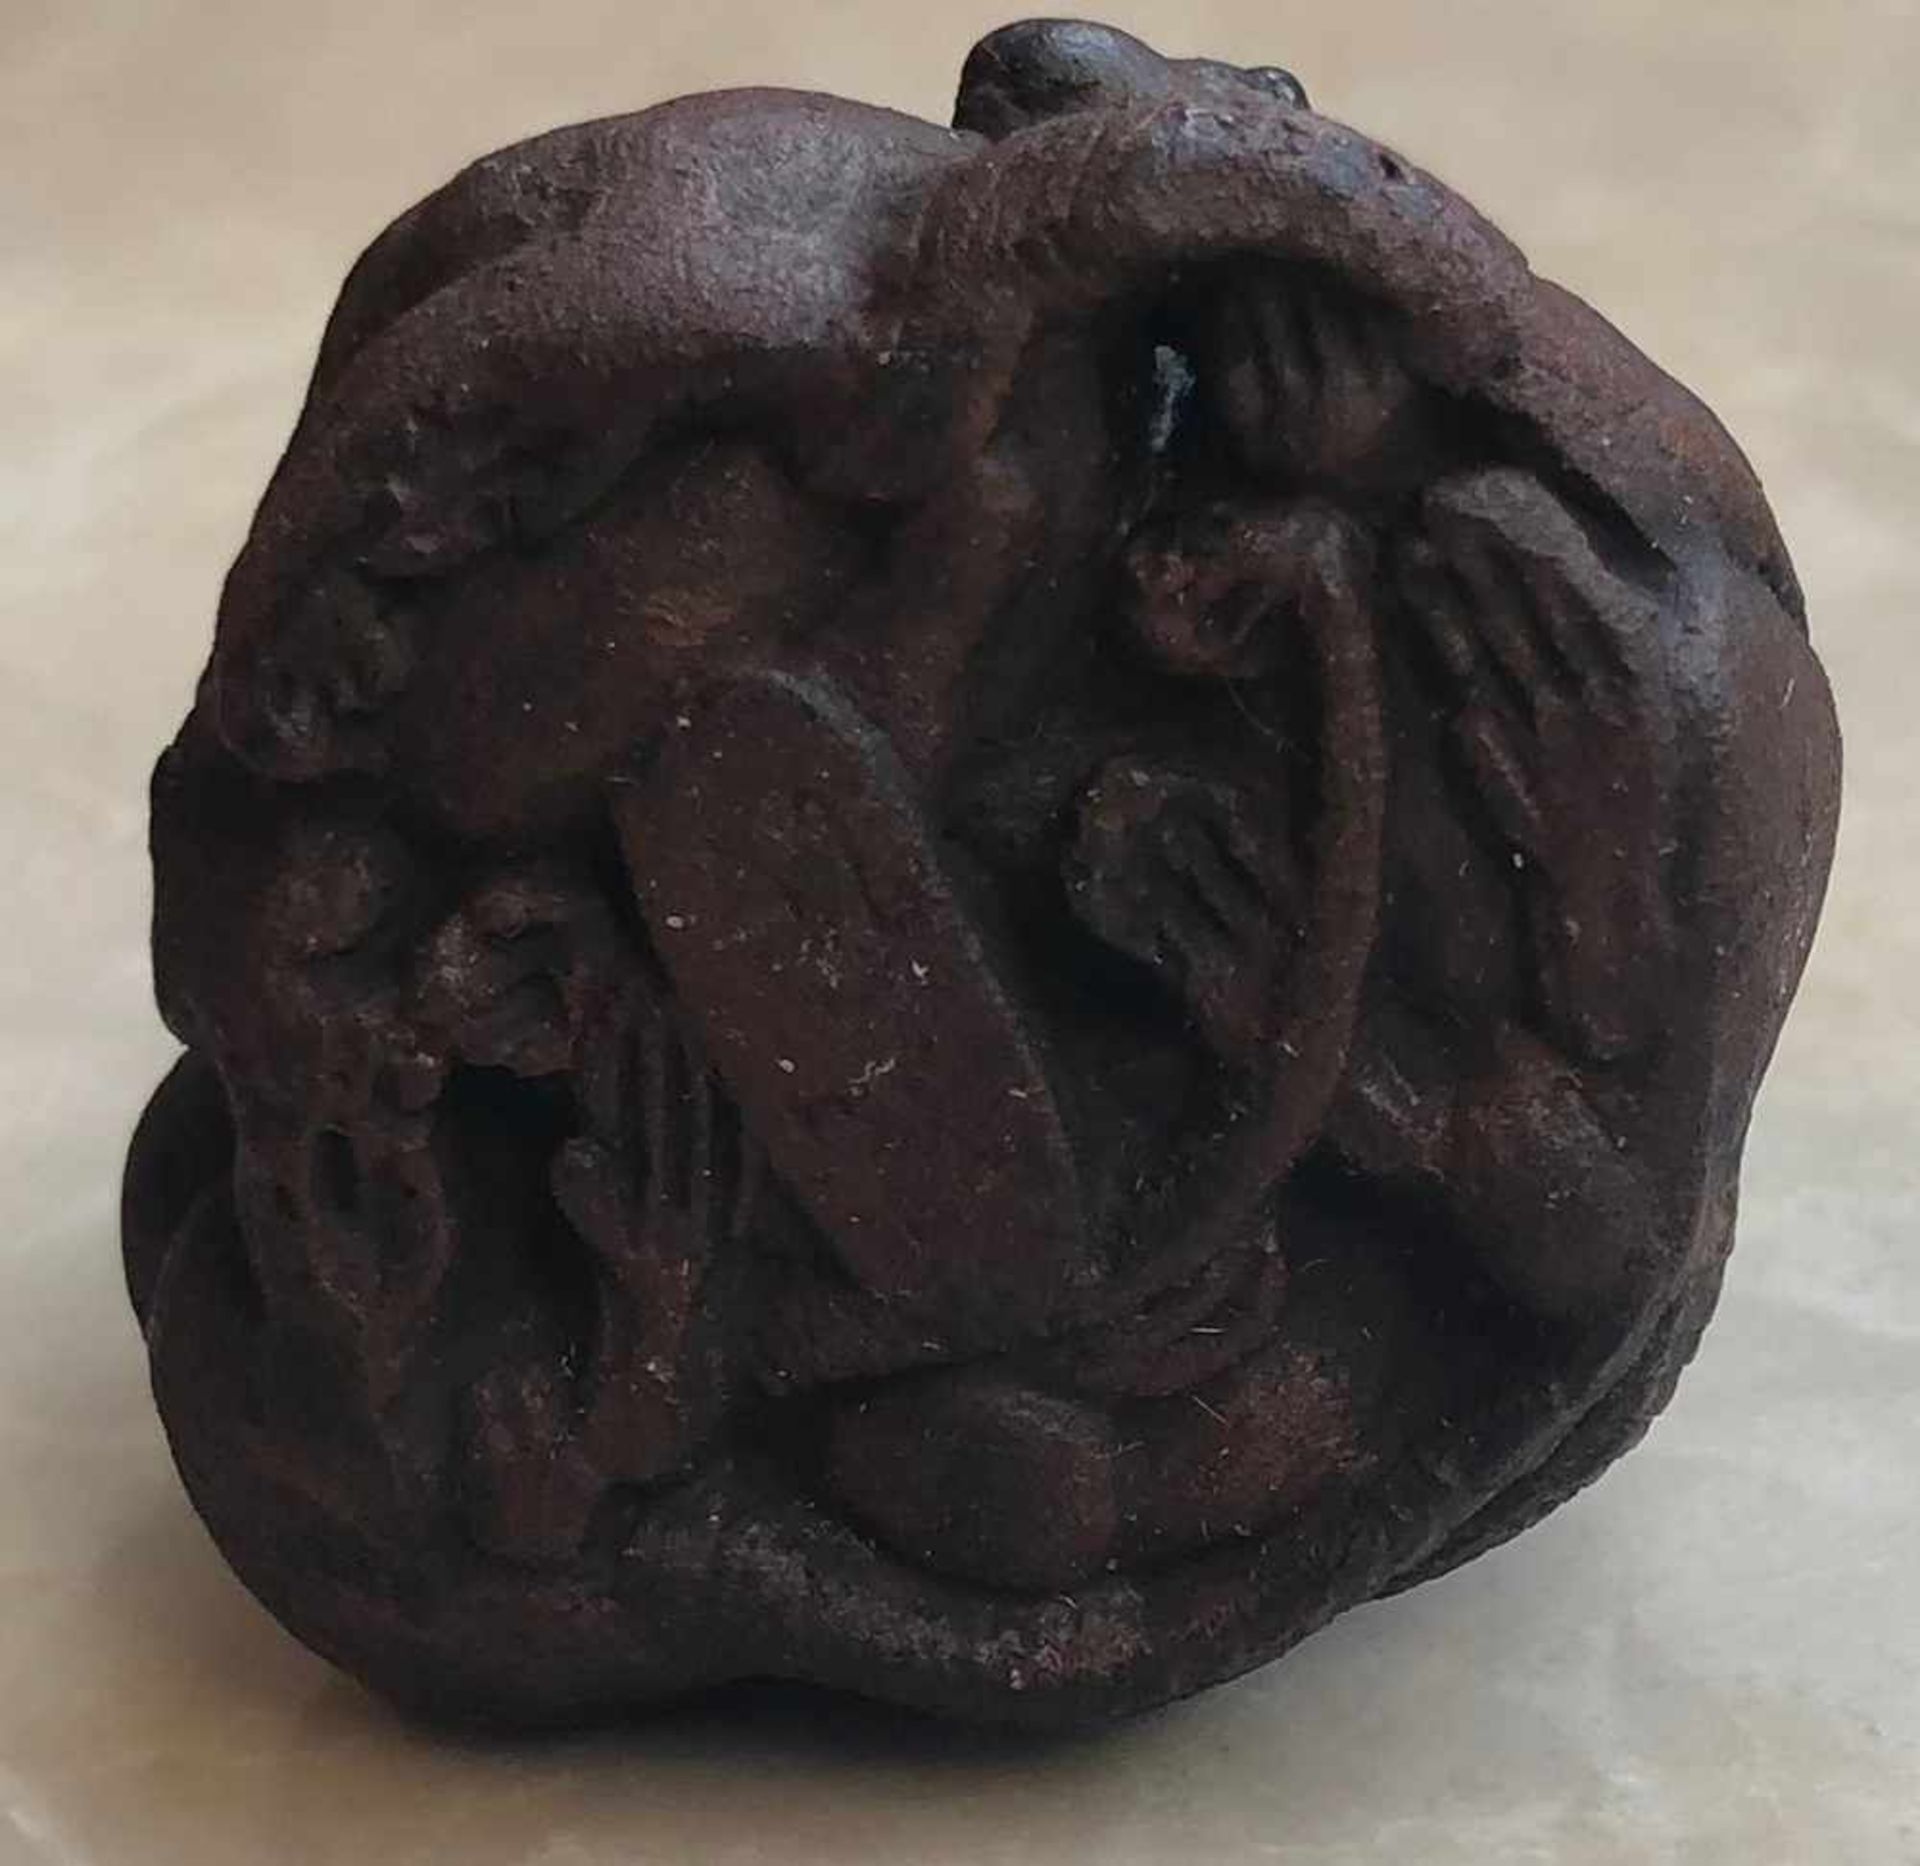 Netsuke. Keramik. Japan, wohl Meiji - Zeit 1869 - 1912. Bis 35 mm breit. Knäuel von 5 Ratten. - Image 4 of 5